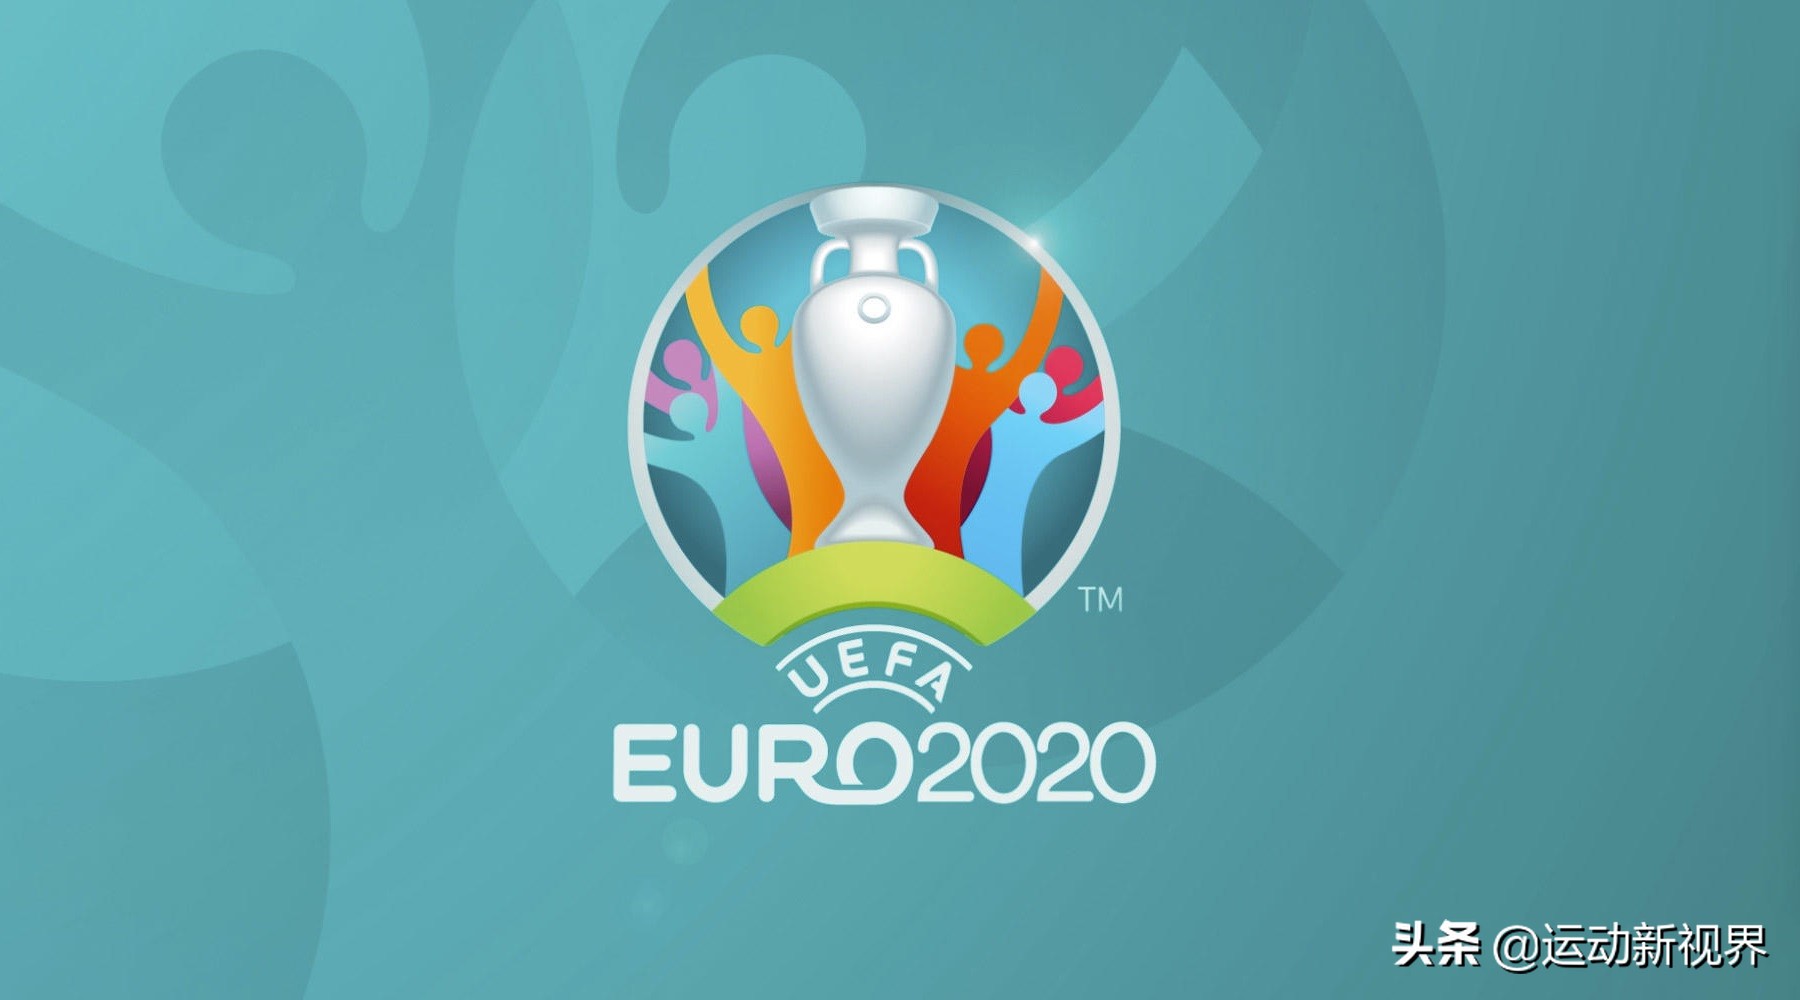 这一届欧洲杯是由荷兰和比利时两国联合承办